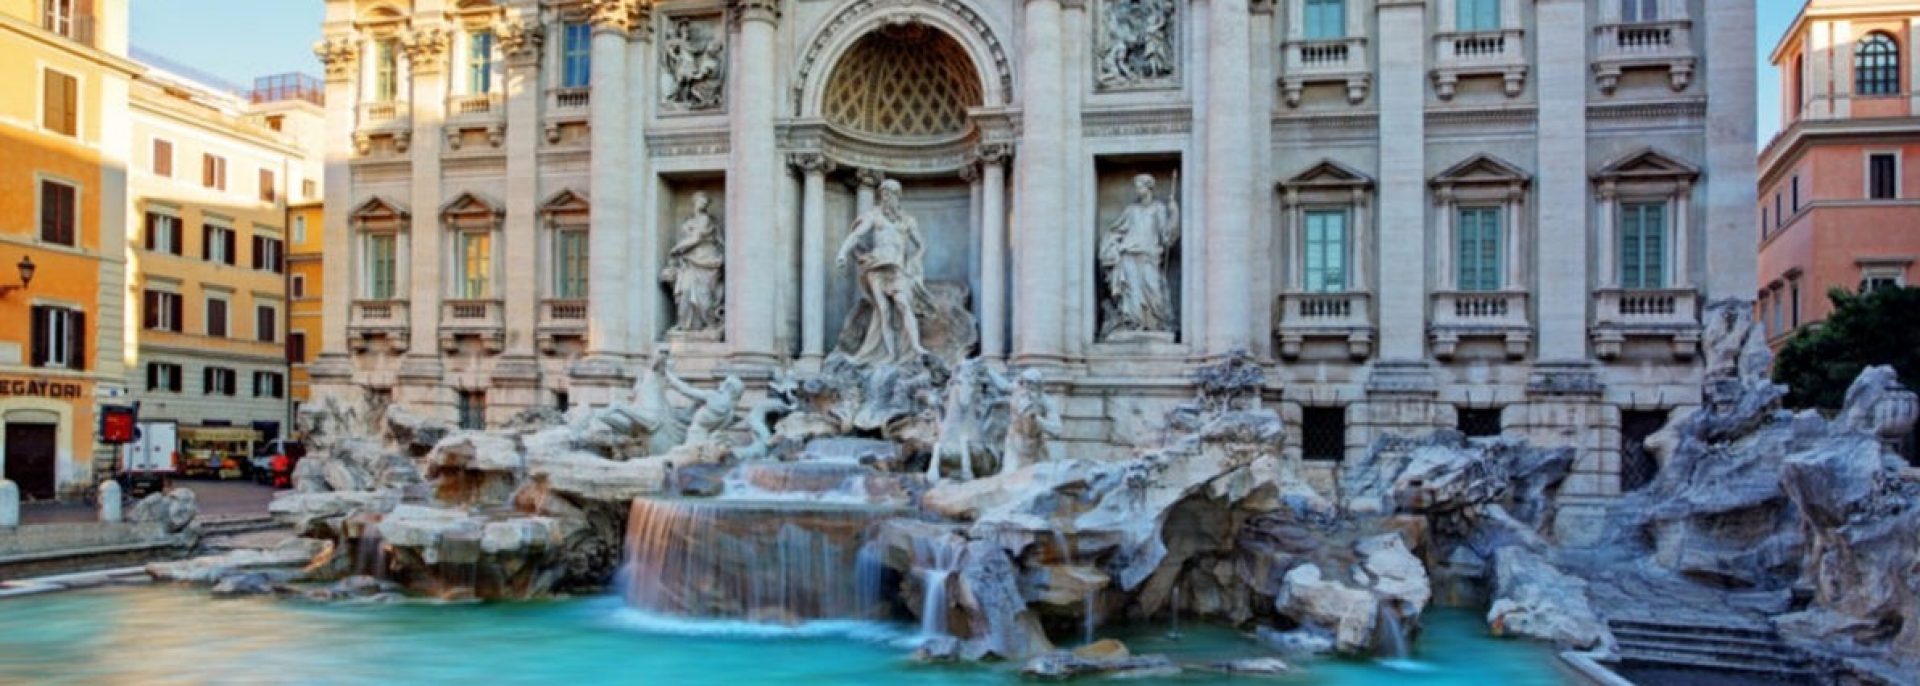 Hilti fontaine de Trevi Rome Italie